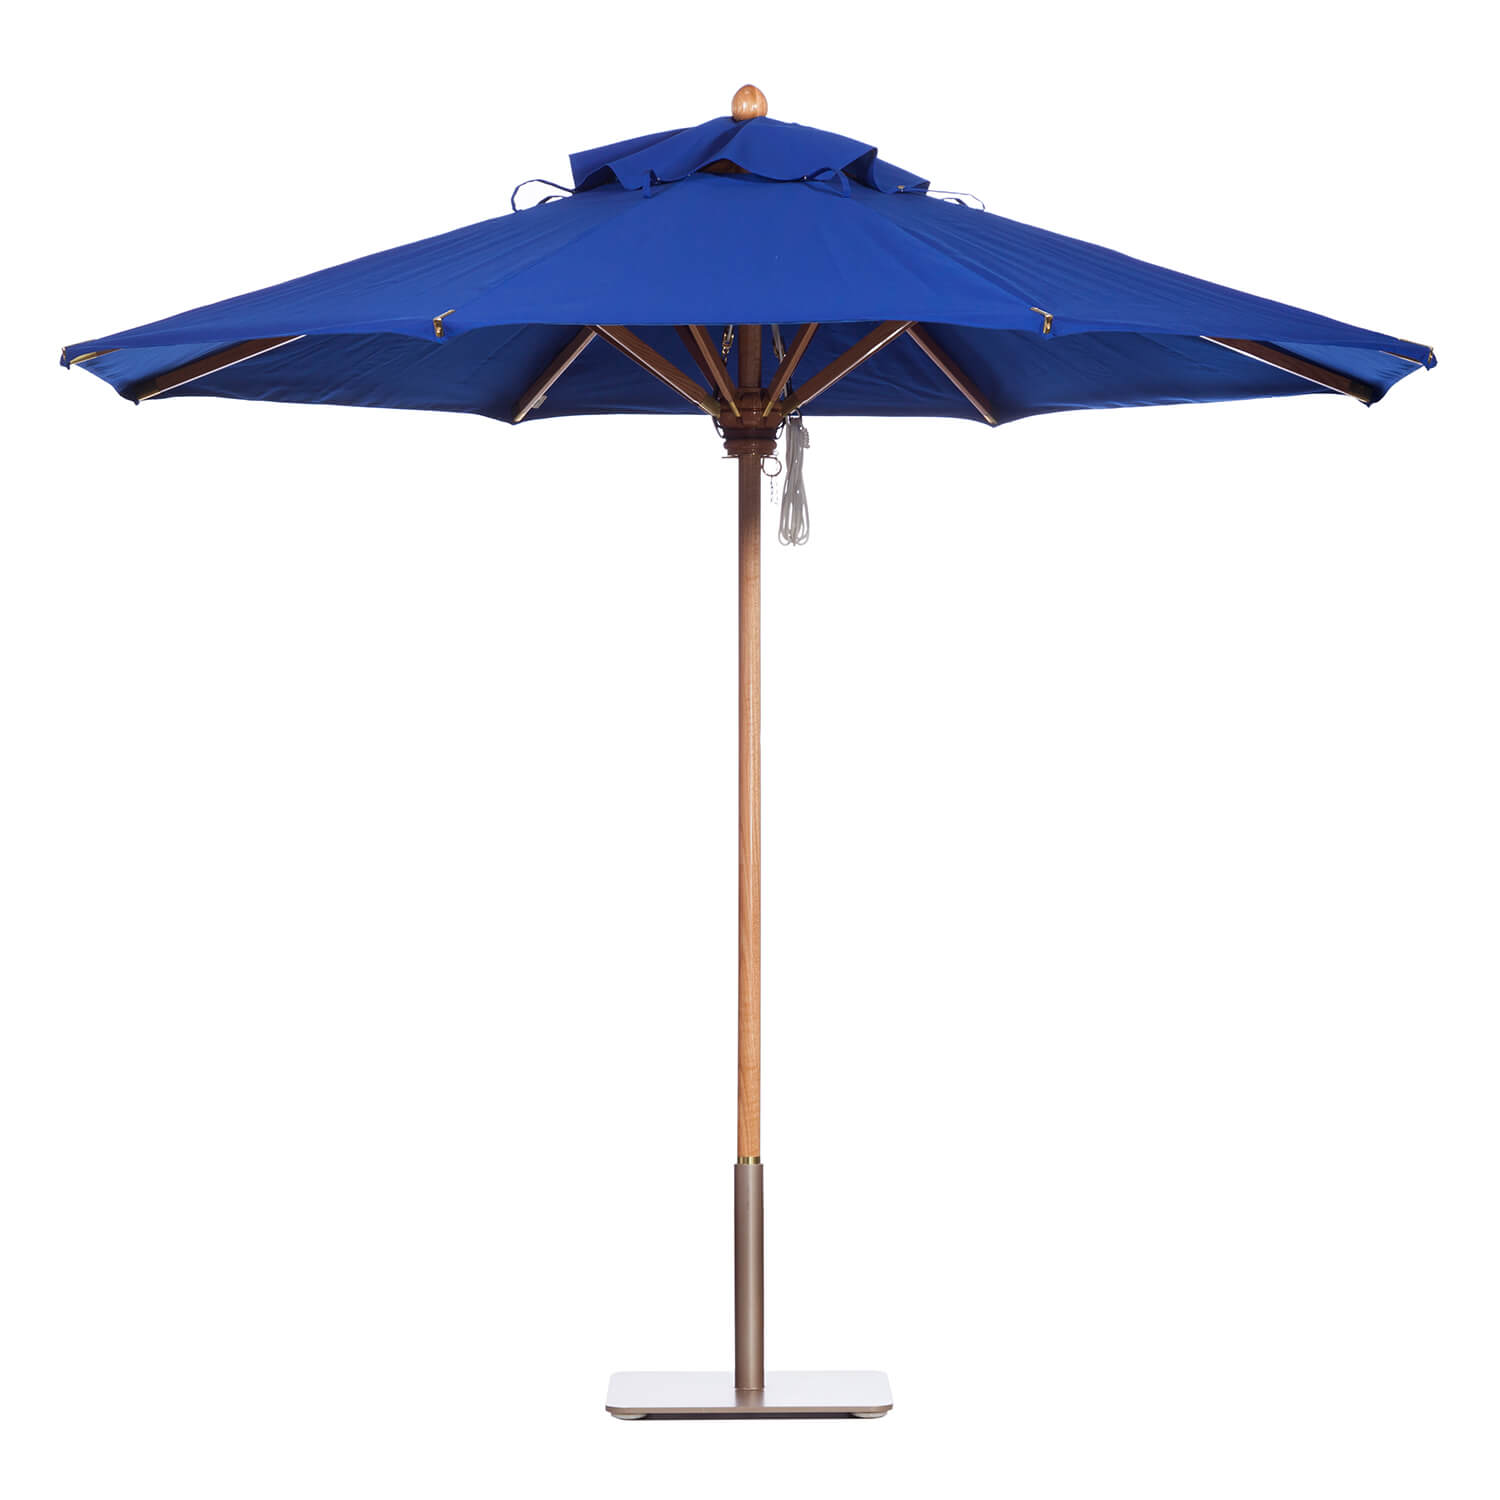 Delft Blue Umbrella Image